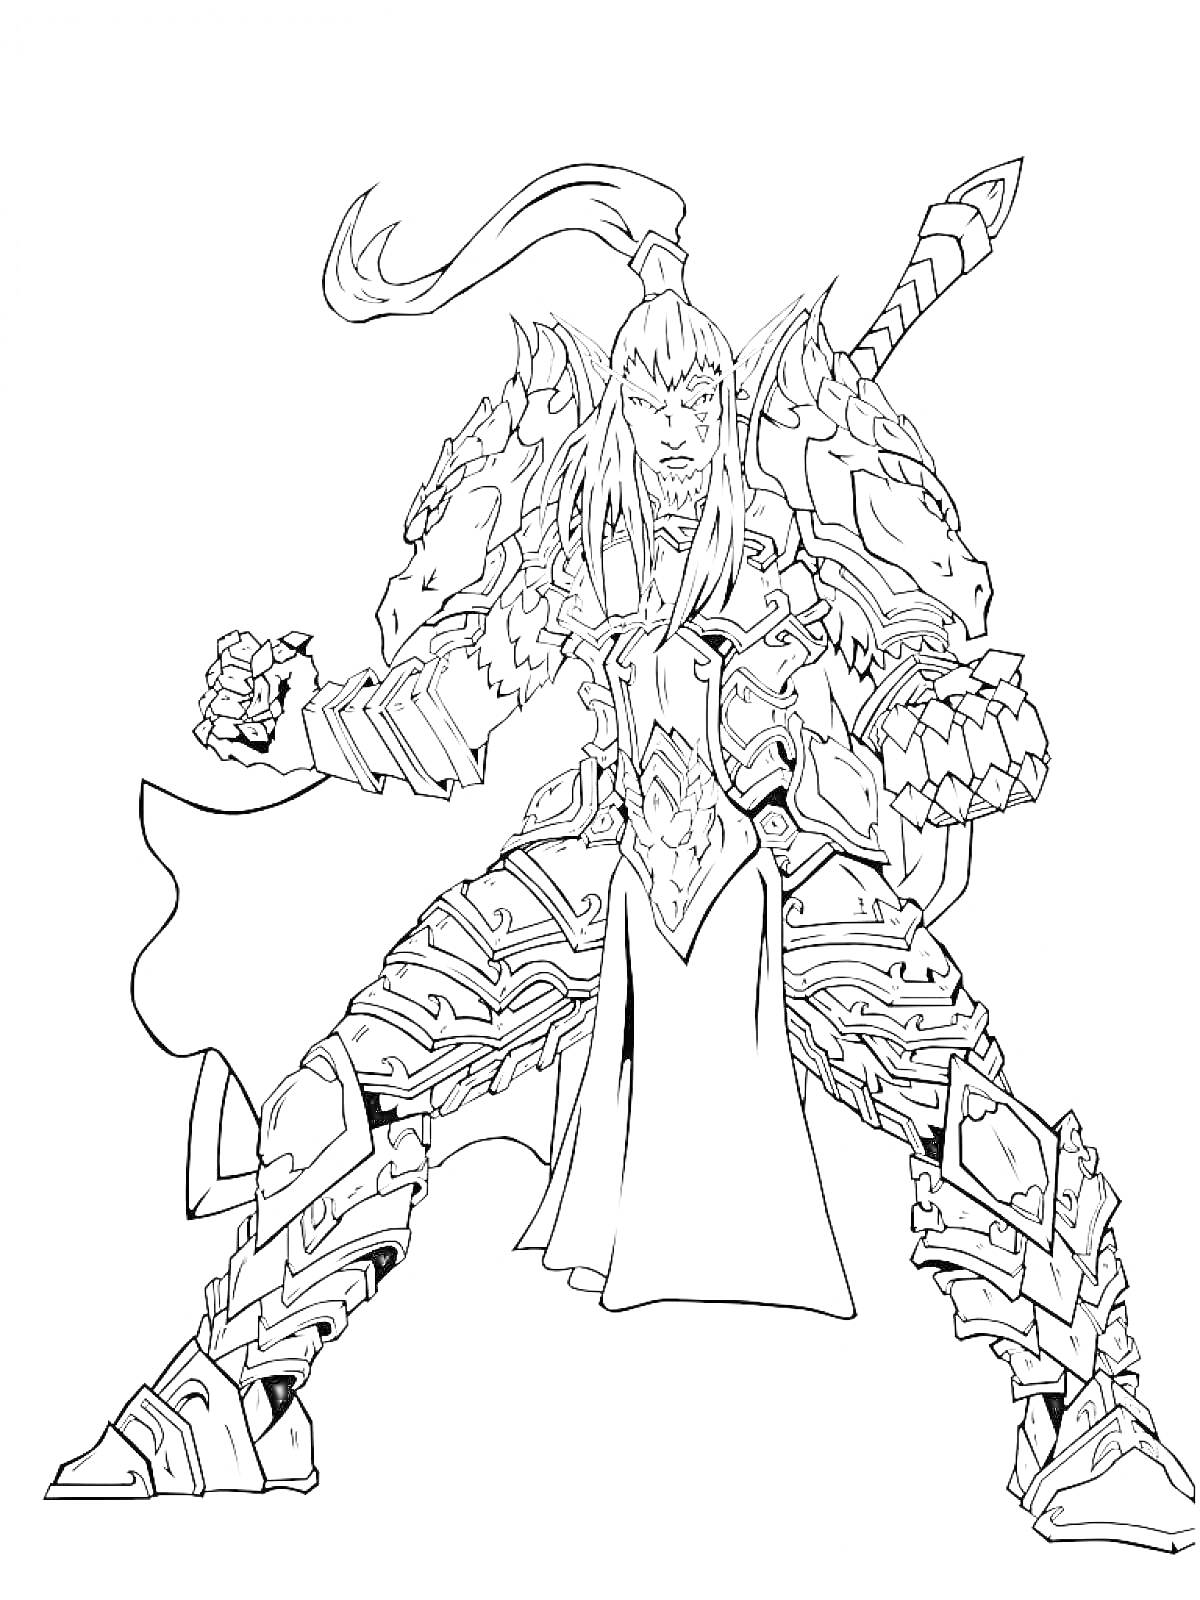 Раскраска Воин в броне с длинными волосами и мечом за спиной, стоящий в боевой позе